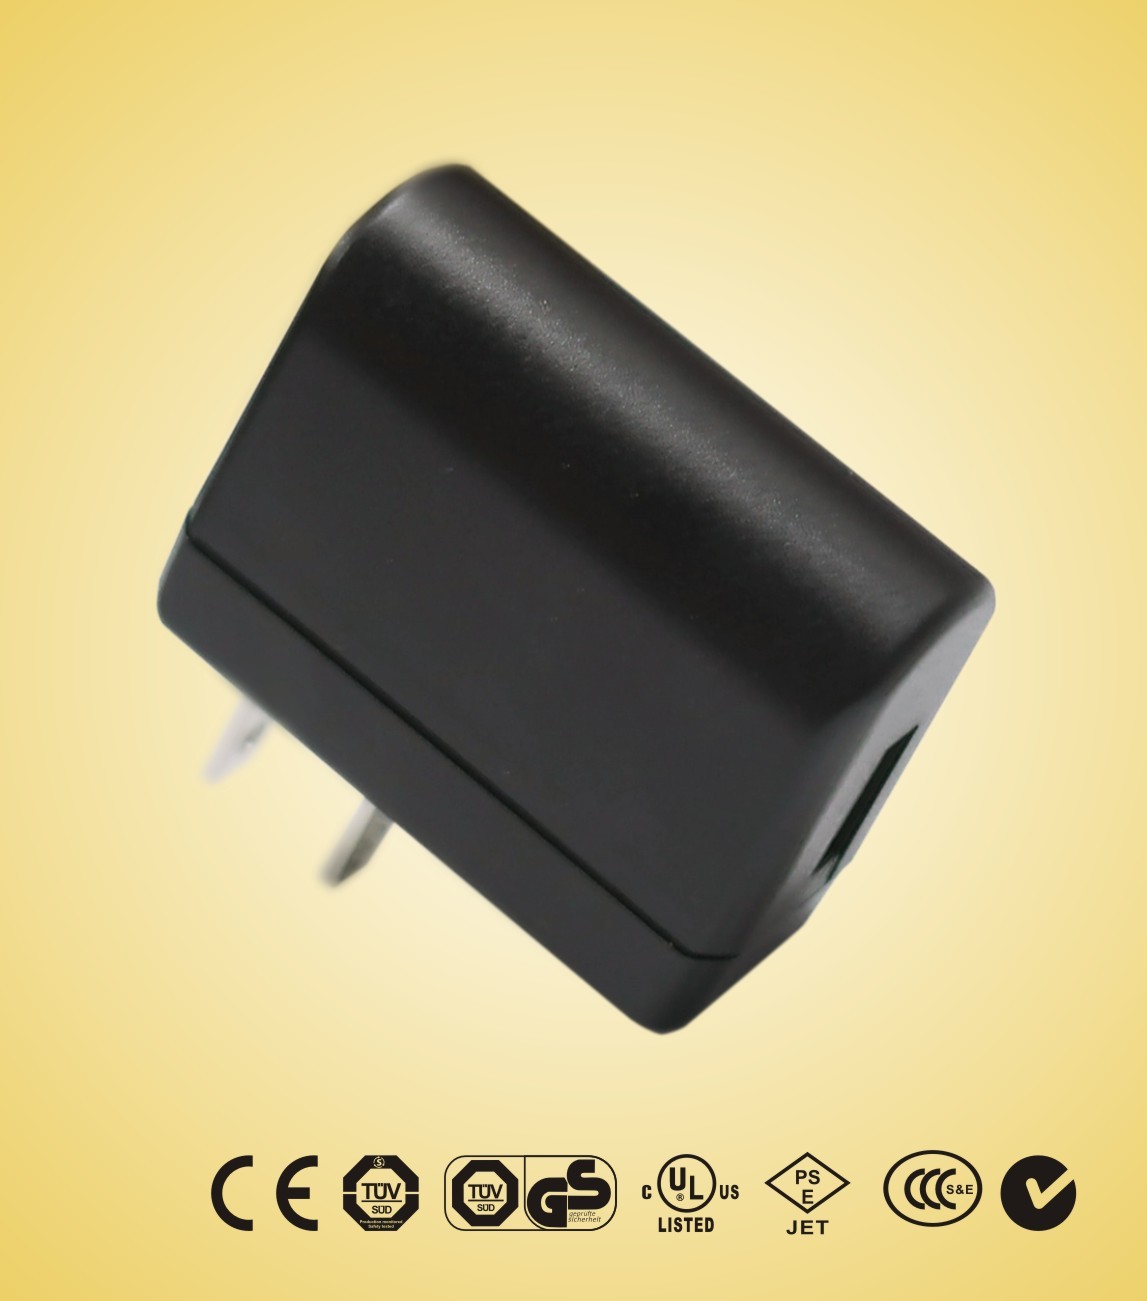 Verde Power fonte 3.5 w 120v AC Universal adaptador de corrente USB para carregador de Set-top-box, ADSL,